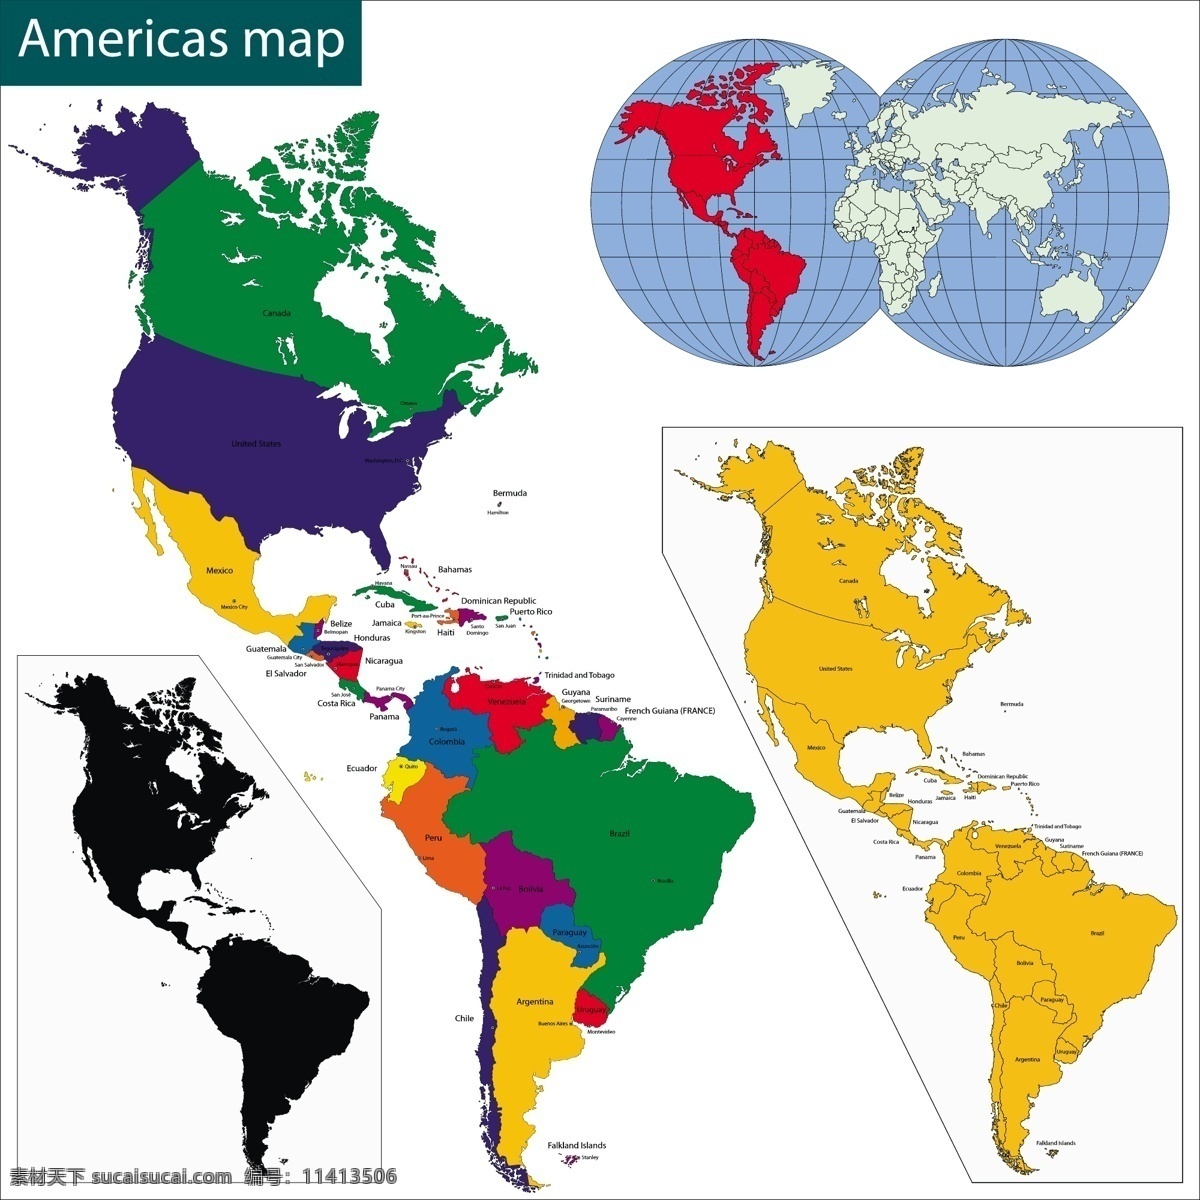 美国 地图 矢量 模板下载 国家地图 世界地图 彩色地图 世界版图 矢量地图 生活百科 矢量素材 白色